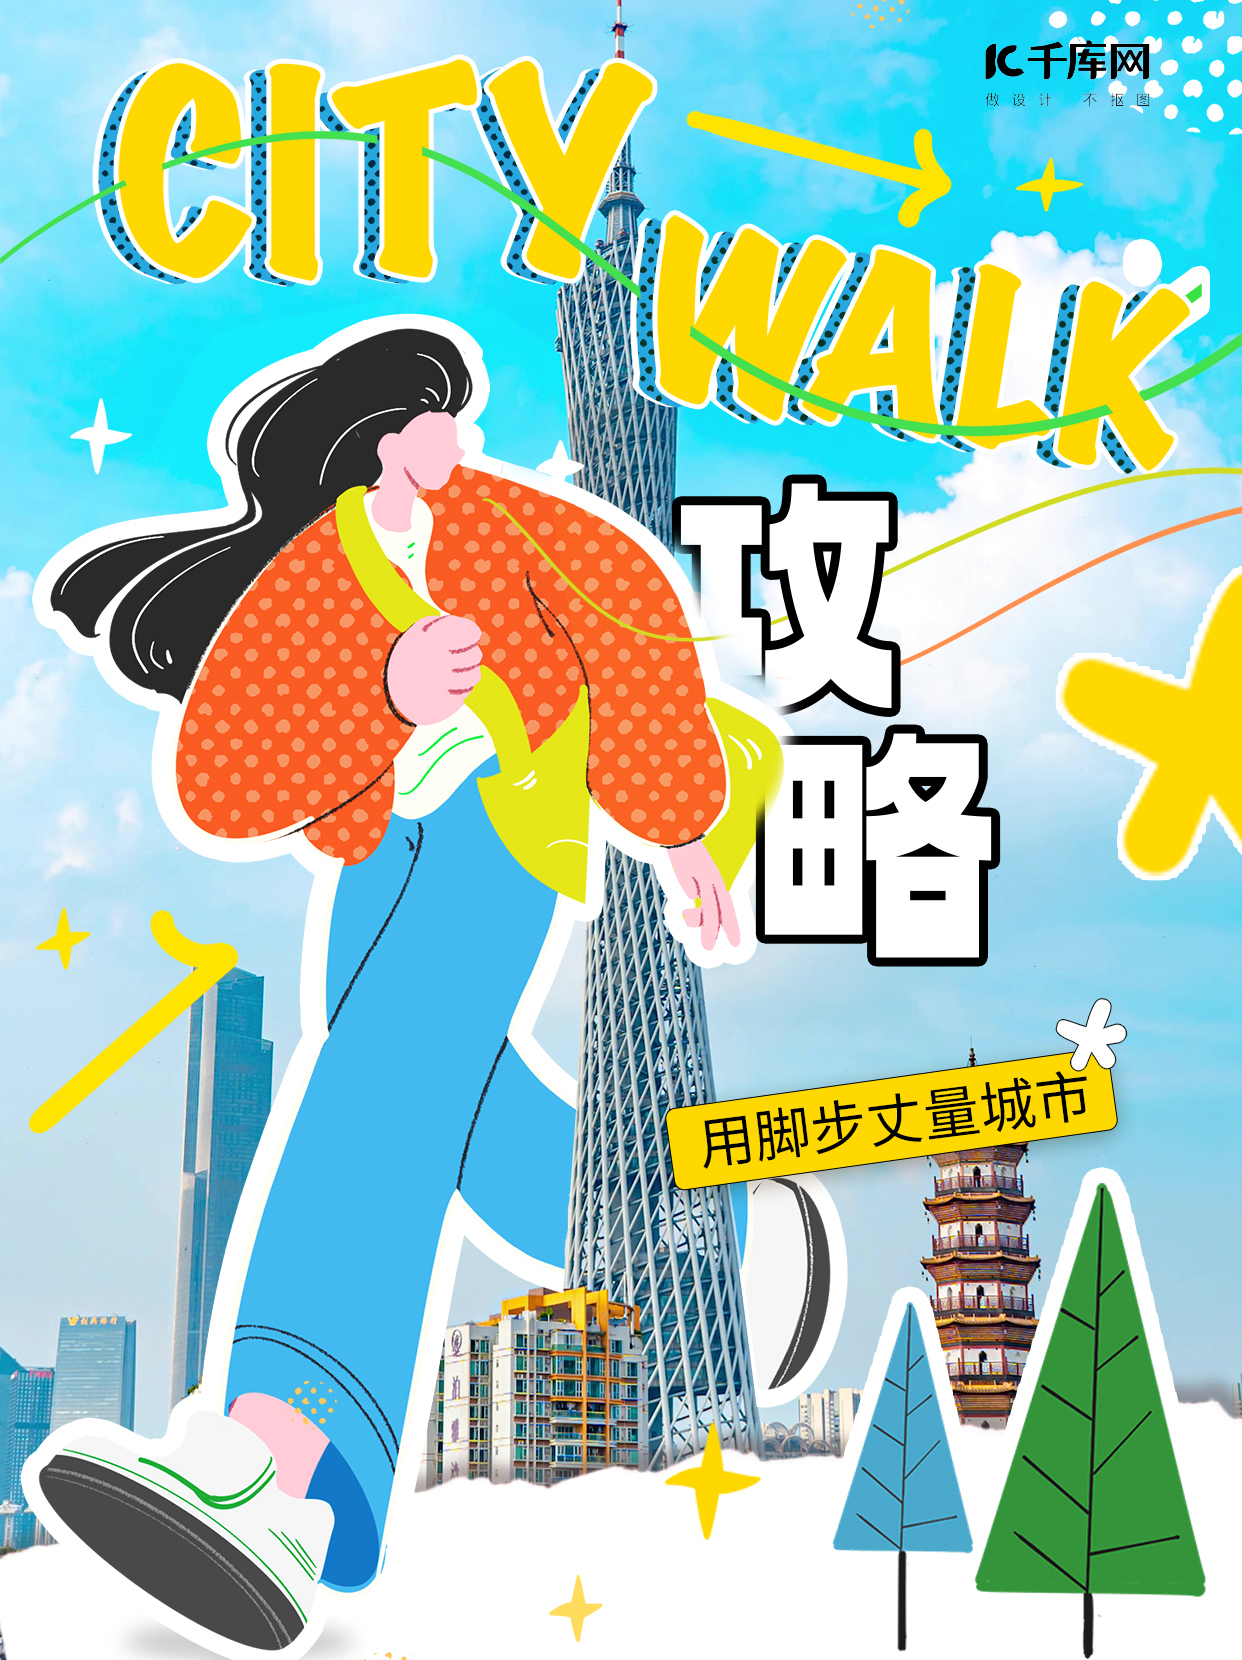 citywalk攻略蓝色黄色插画小红书手机广告海报设计图片图片